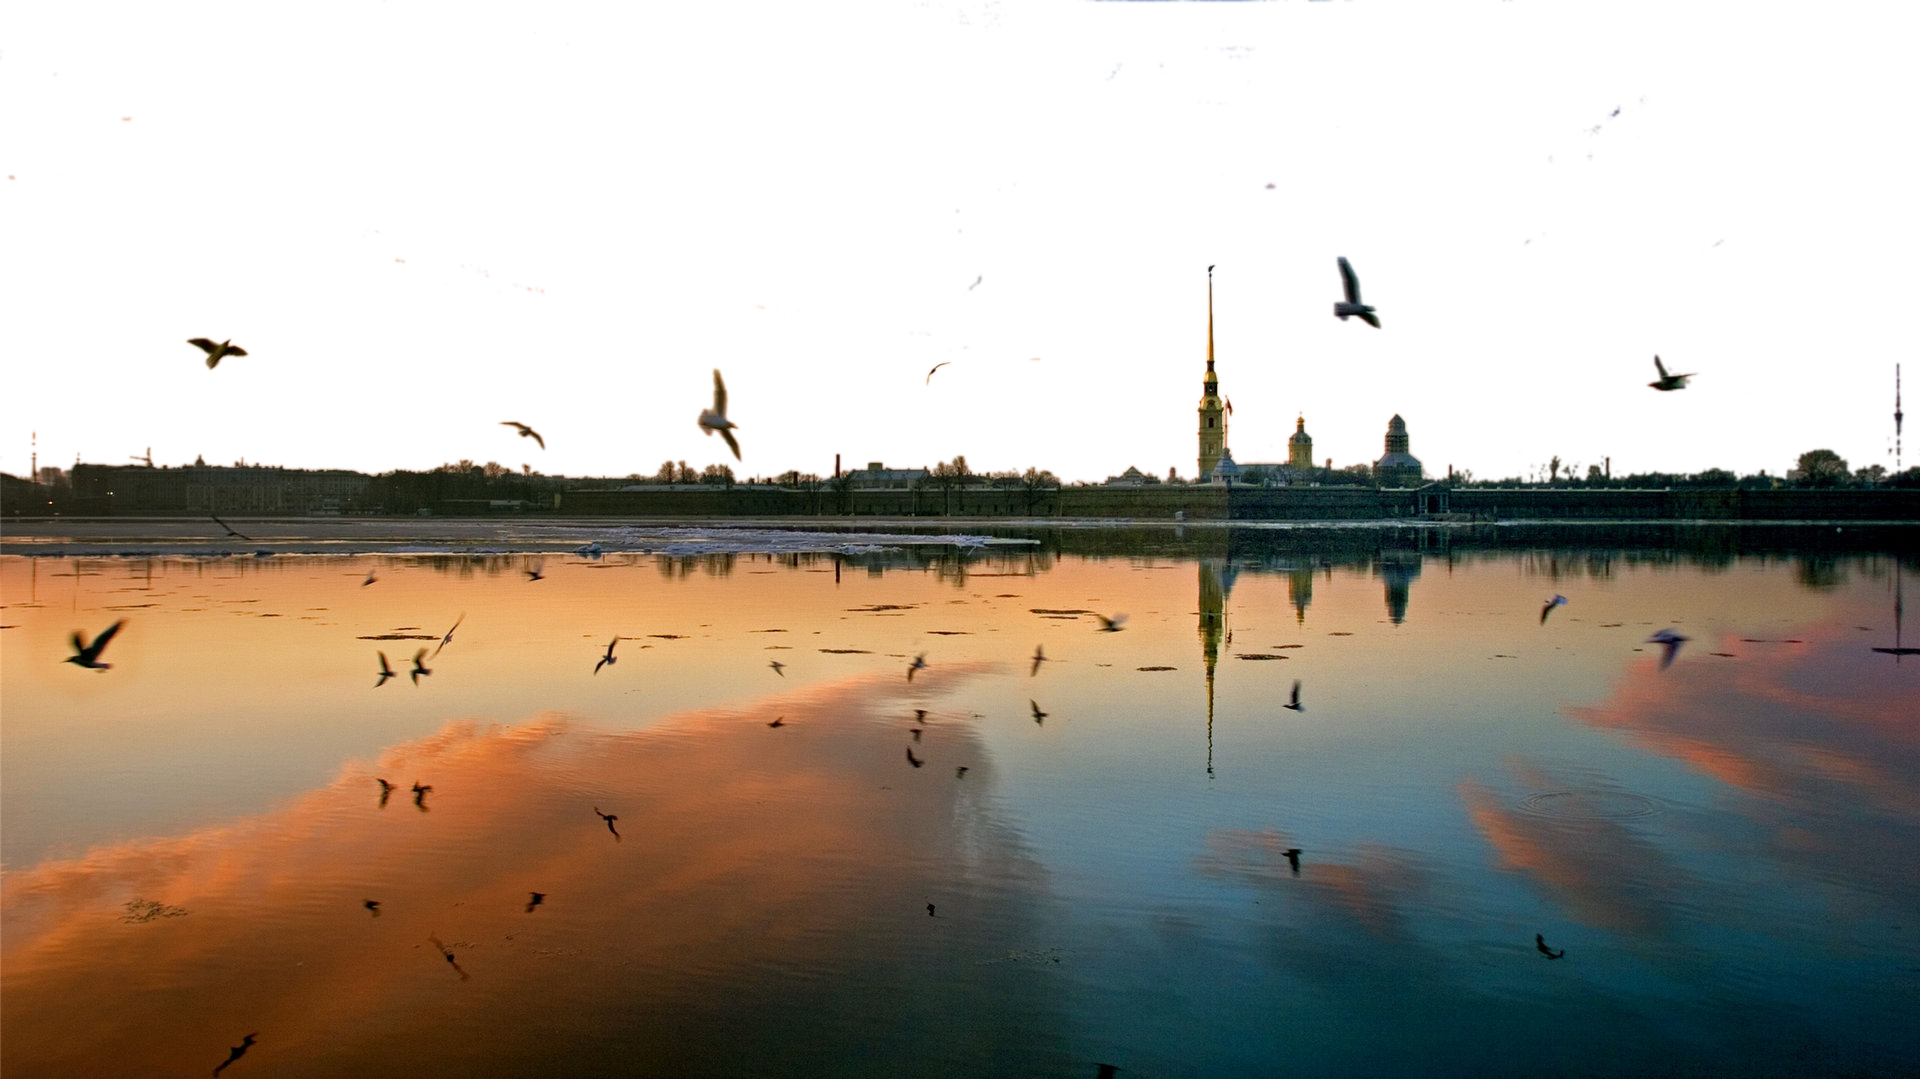 Birds flying at dusk PNG Image